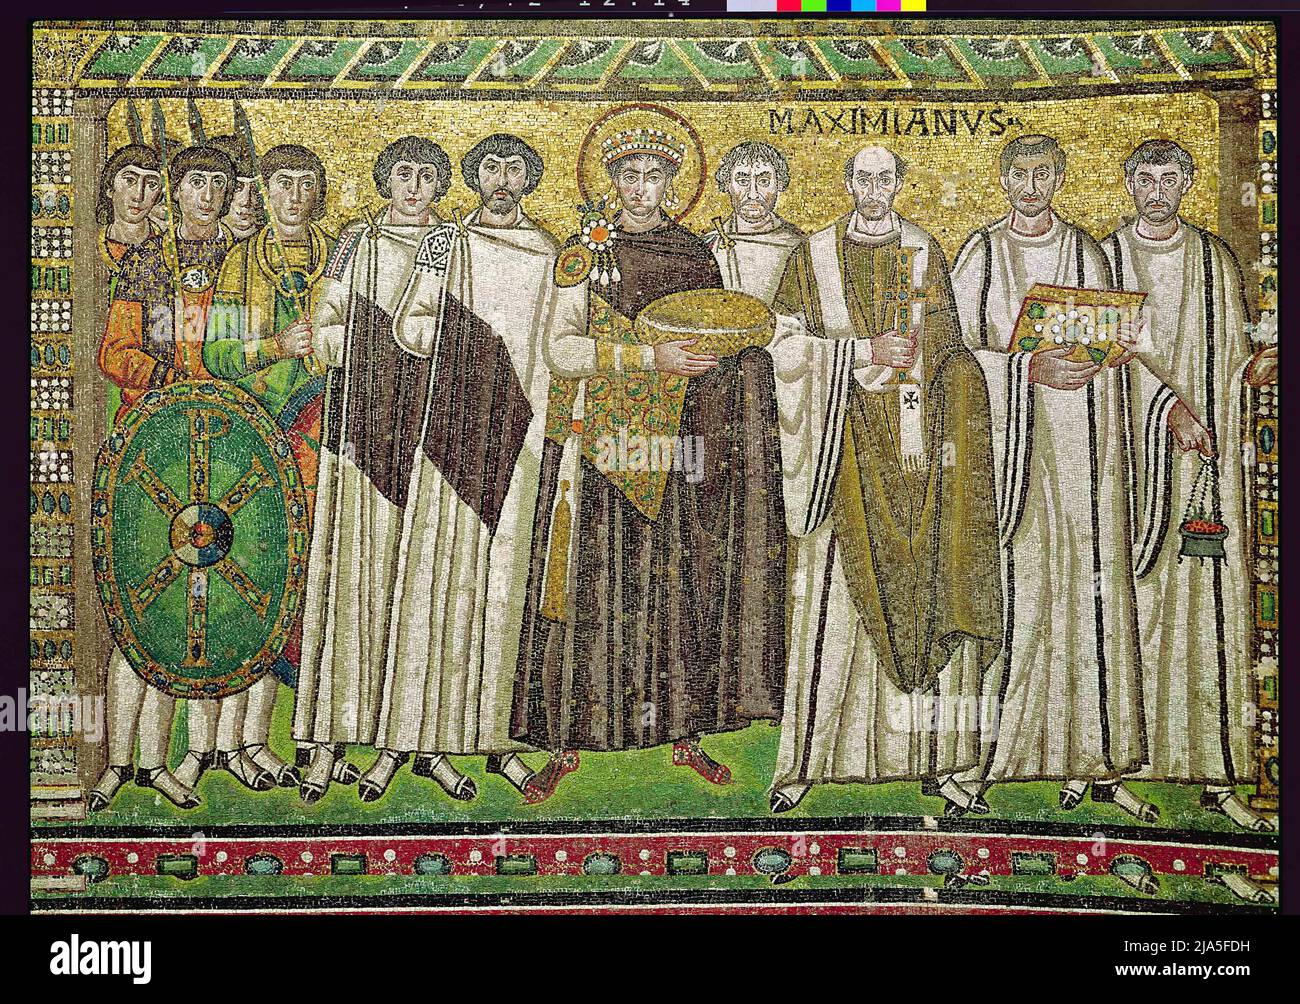 Justinian I (483-565) ist dargestellt, der möglicherweise das Brot der Eucharistie oder eine Patene oder einen symbolischen Korb für die Würdigung trägt; rechts von ihm möglicherweise Belisarius und links möglicherweise der Bankier Julianus Argentarius, der für den Bau der Kirche bezahlt hat; ebenfalls zu sehen ist Maximian, Erzbischof von Ravenna von 545-553; Die Gruppe der Soldaten trägt einen Schild mit dem Chi-Rho-Emblem, der auf den Sieg Konstantins bei der Schlacht an der Milvianischen Brücke im Jahr 312 n. Chr. anspielt; Archibishop Maximian; Stockfoto